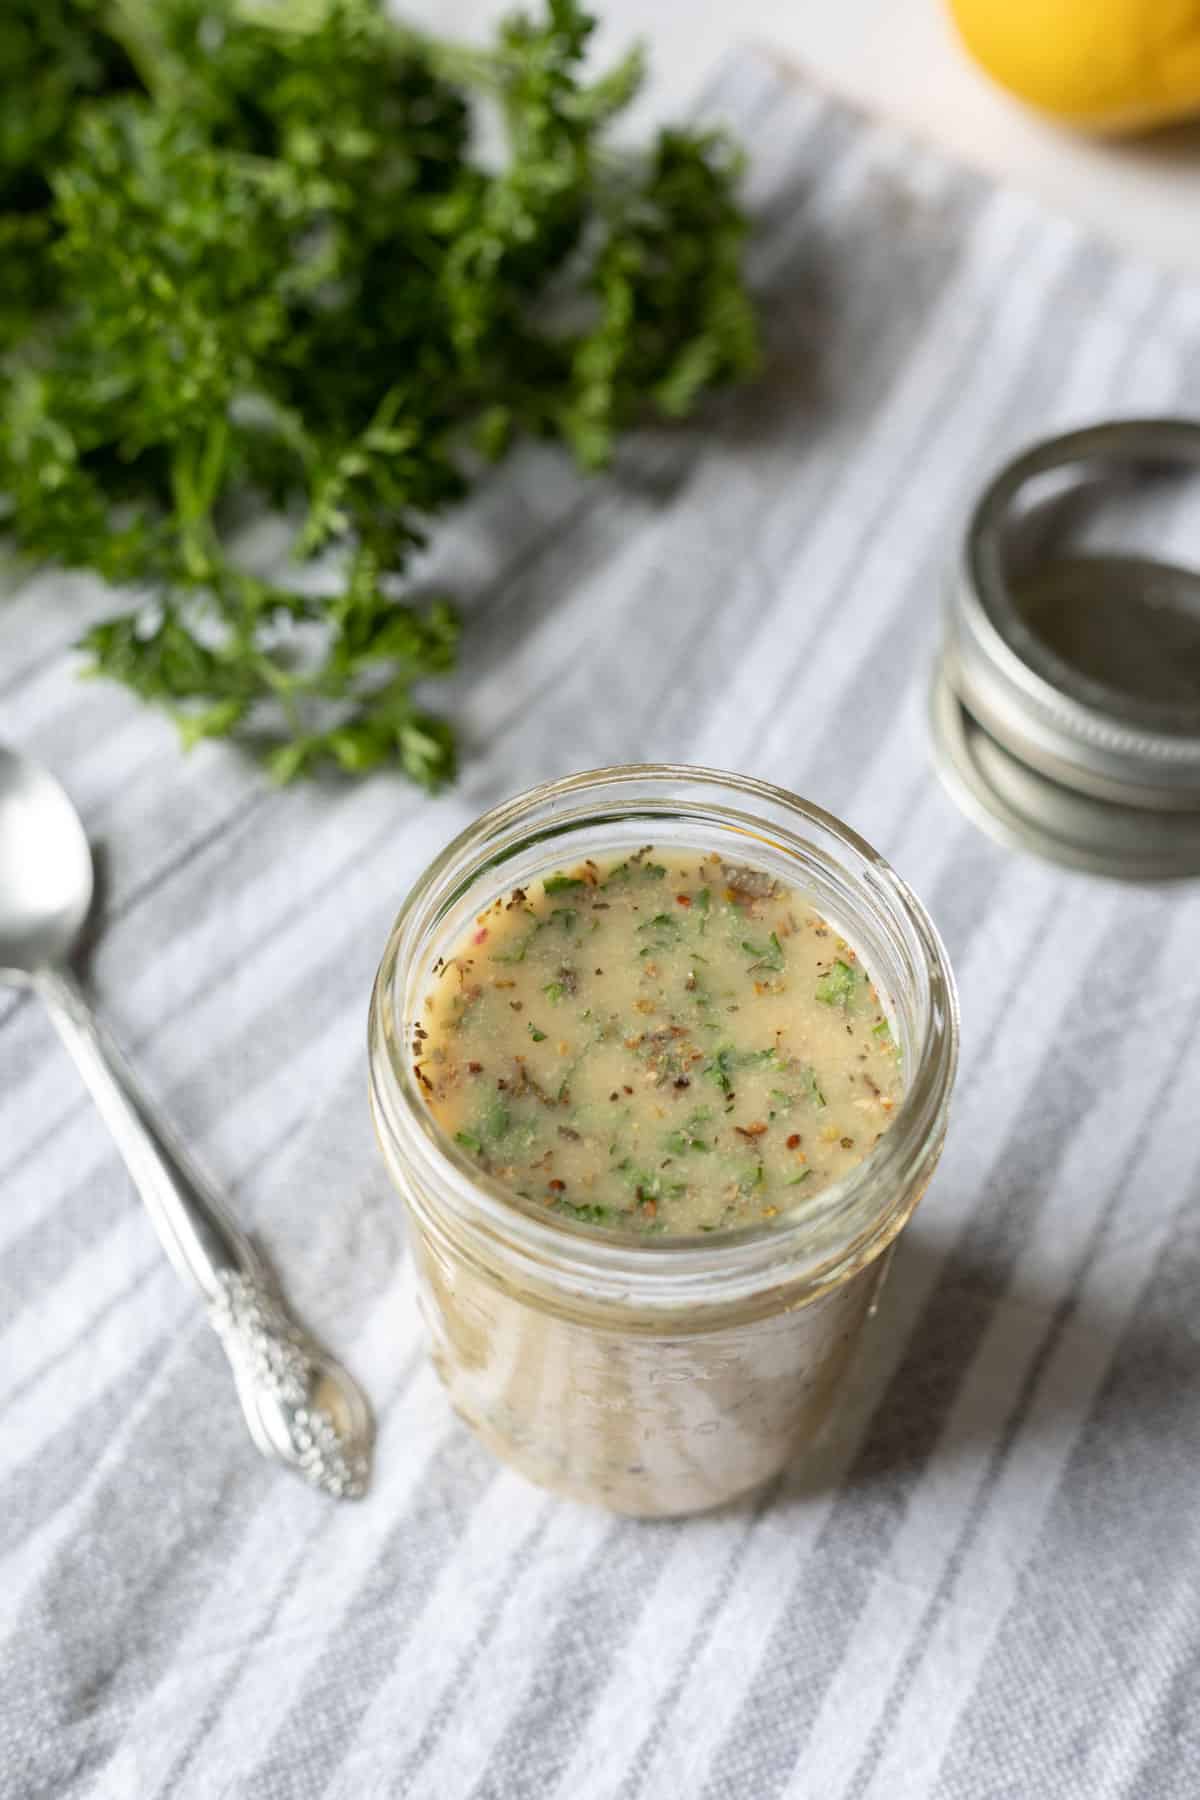 prepared salad dressing in a small glass jar.